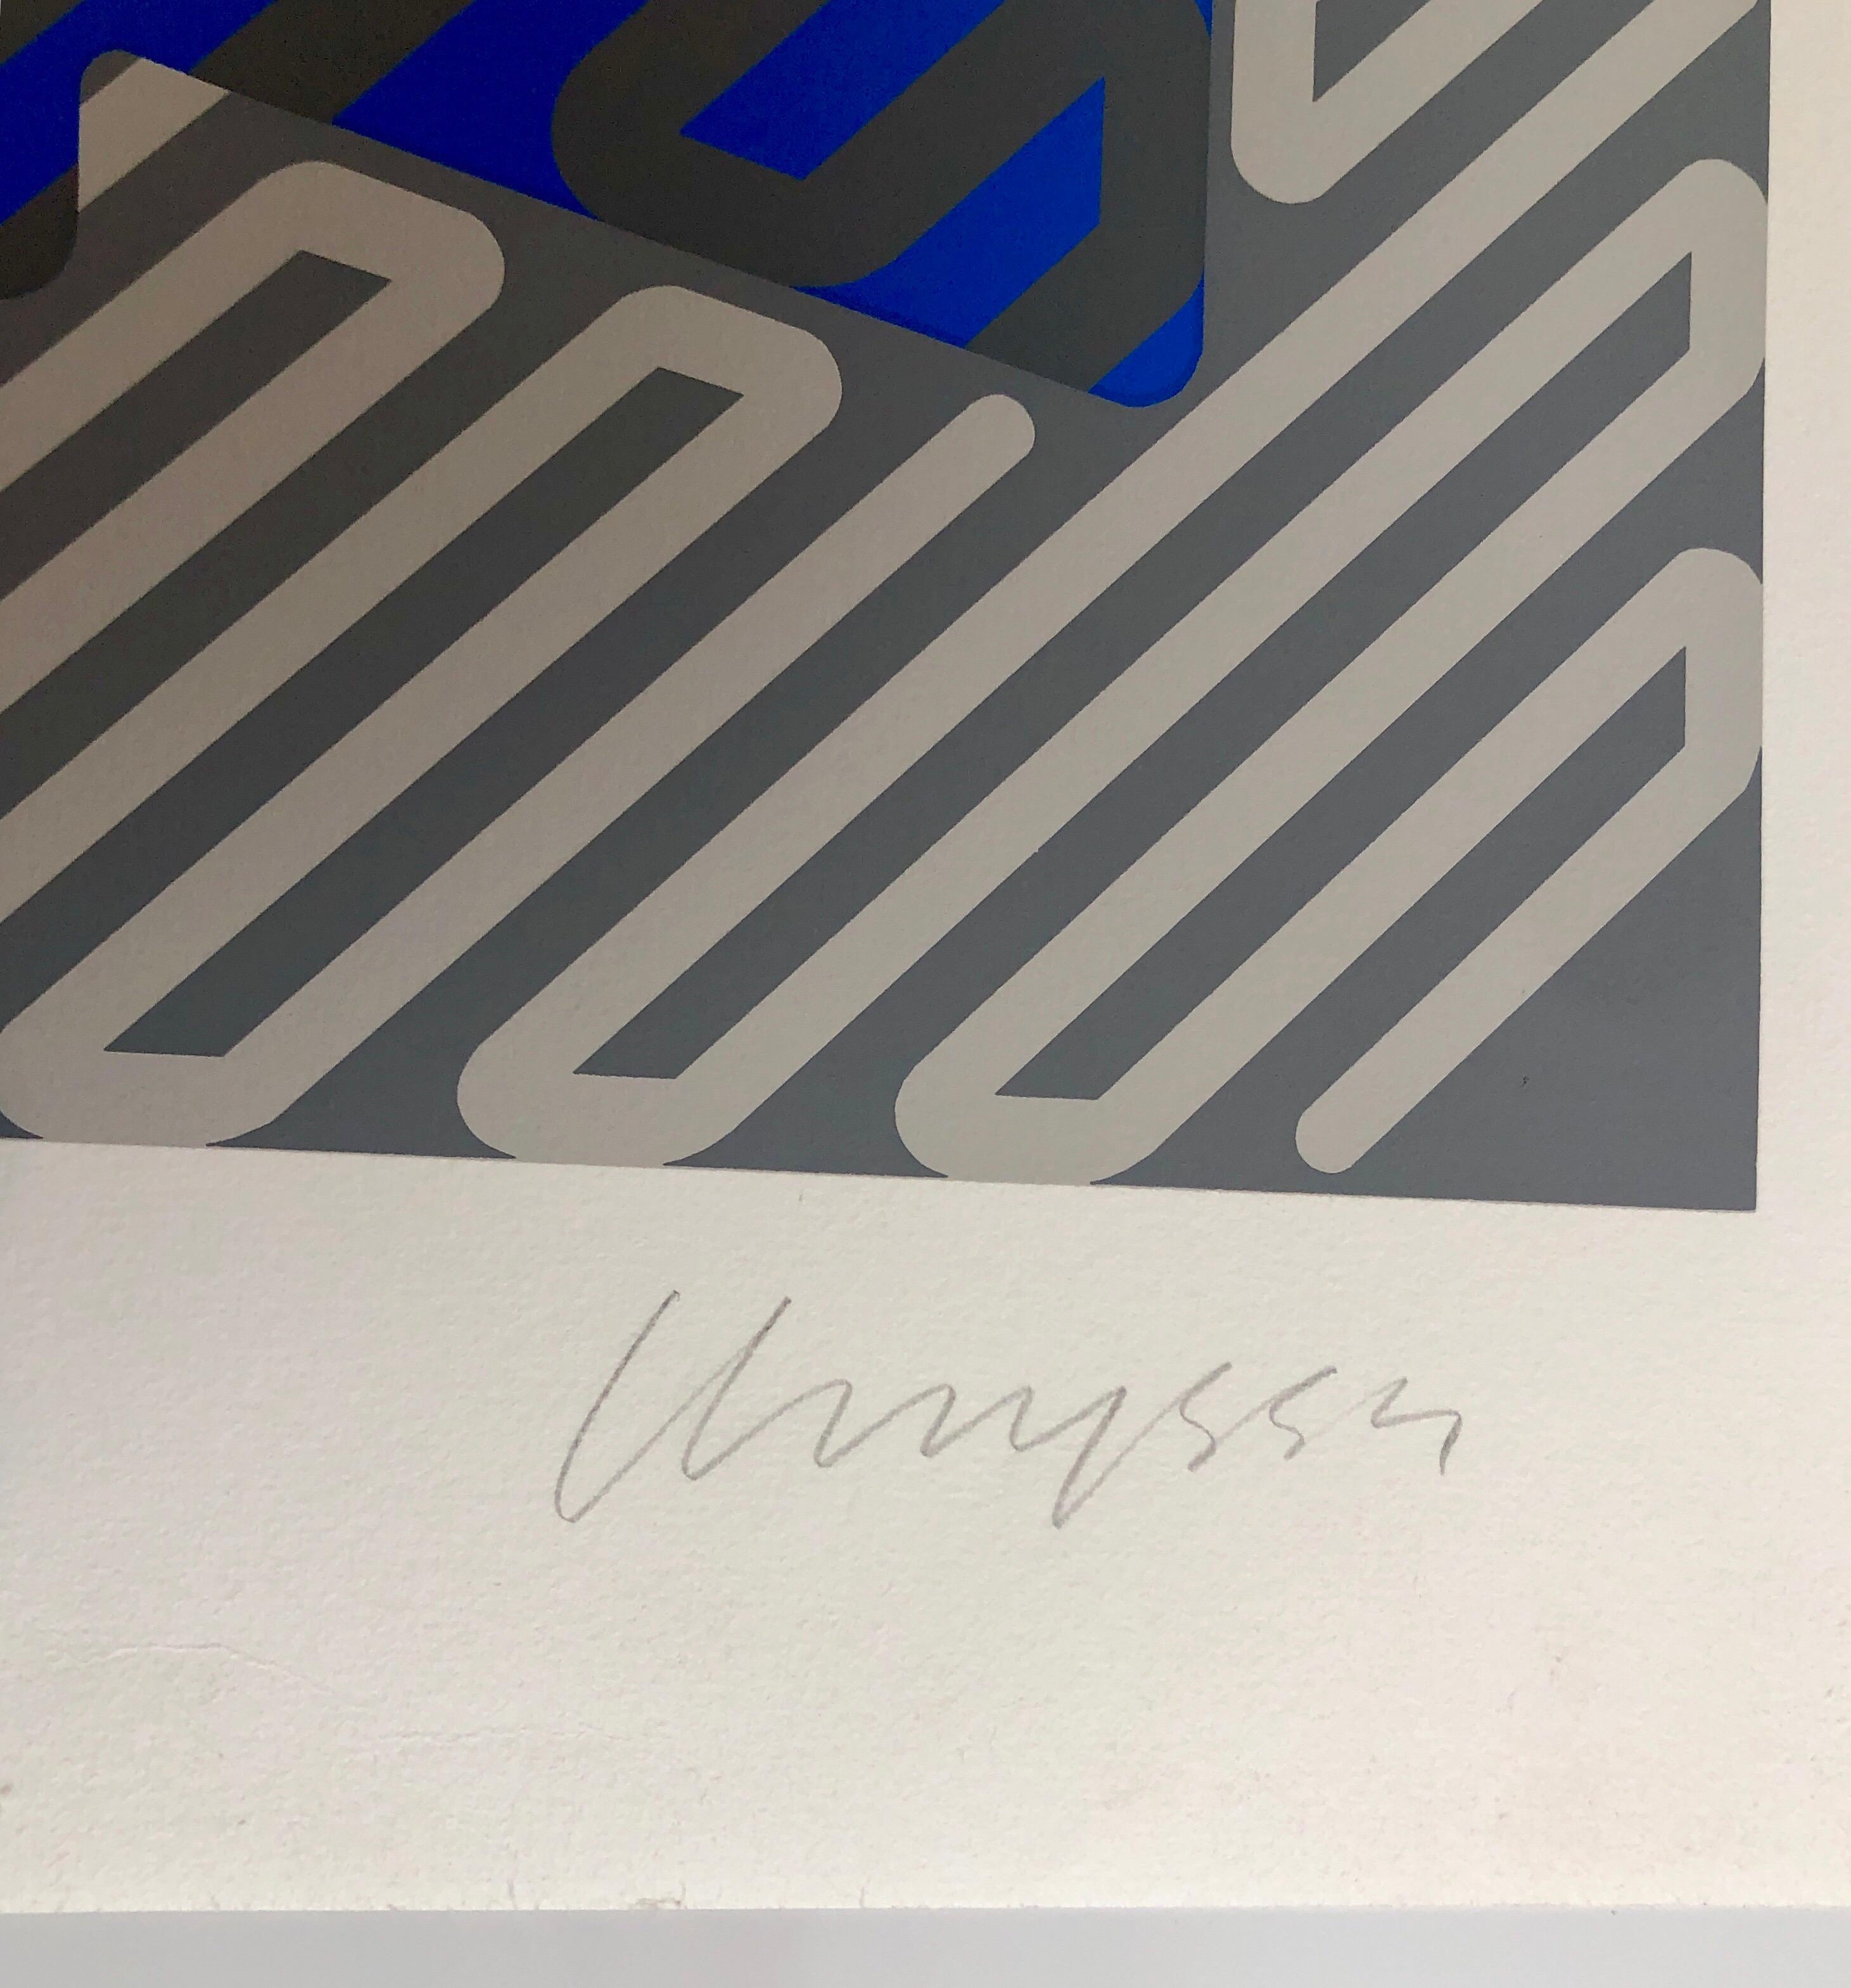 Sérigraphie sur papier Arches, signée et numérotée au crayon. Sérigraphie en gris bleu (argent).
Chryssa Vardea-Mavromichali (grec : Χρύσα Βαρδέα-Μαυρομιχάλη ; 31 décembre 1933 - 23 décembre 2013) est une artiste gréco-américaine qui a travaillé